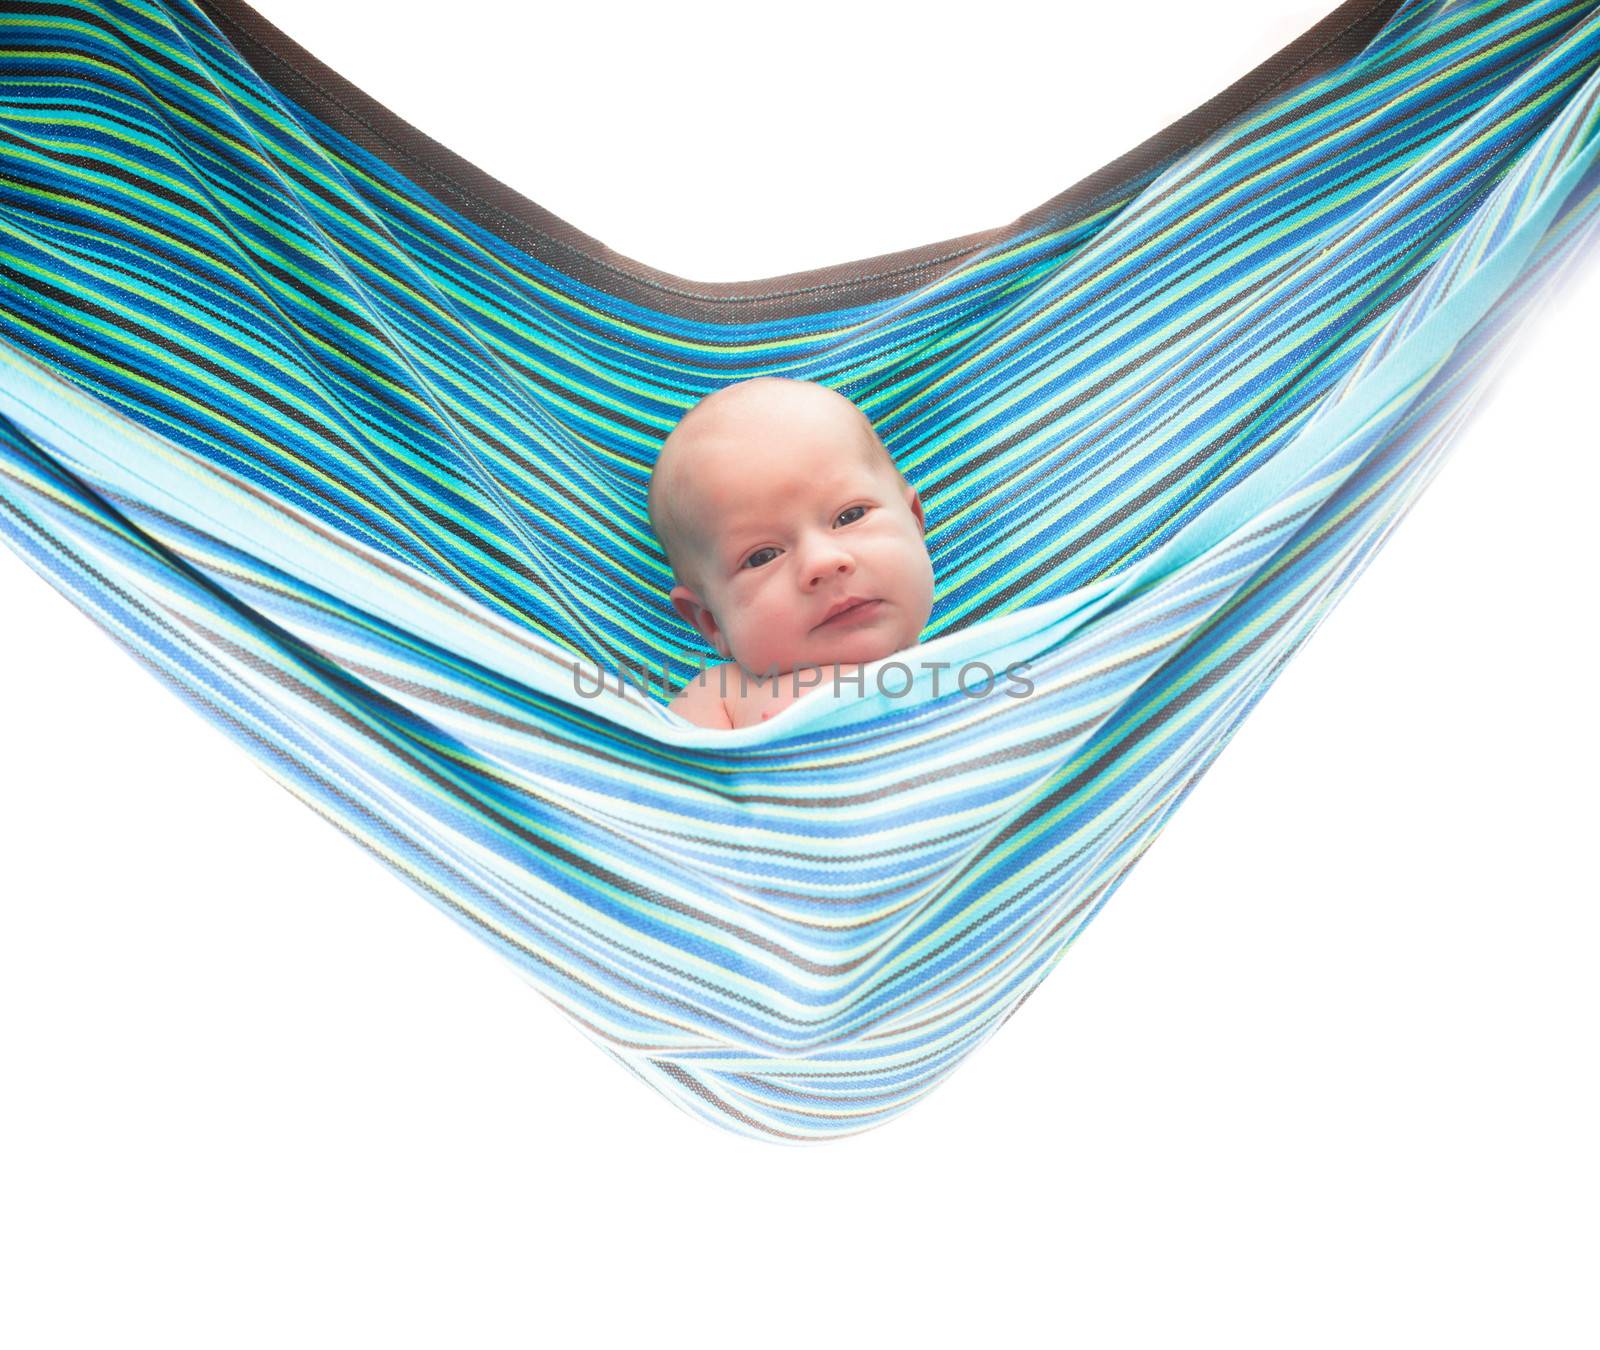 Baby in hammock by oksix